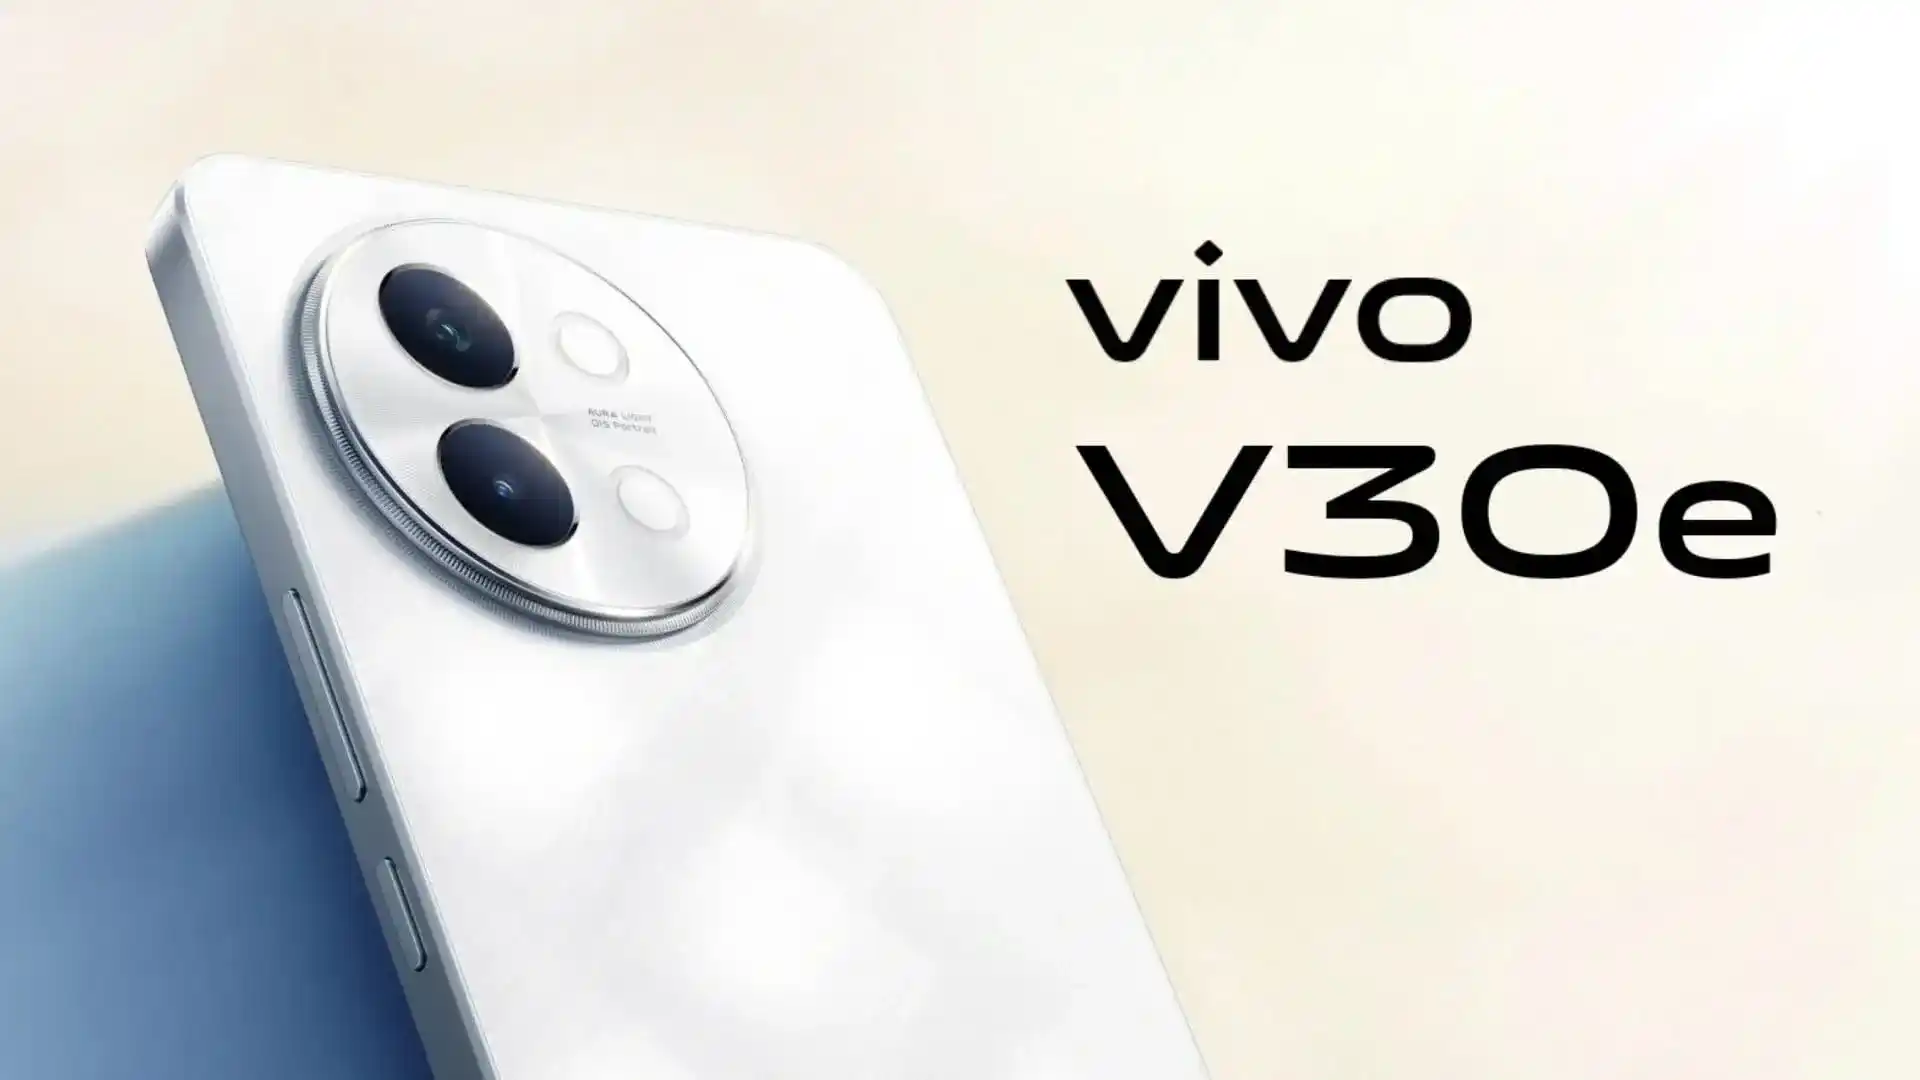 Een insider heeft het uiterlijk en de specificaties van de nieuwe Vivo V30e smartphone onthuld